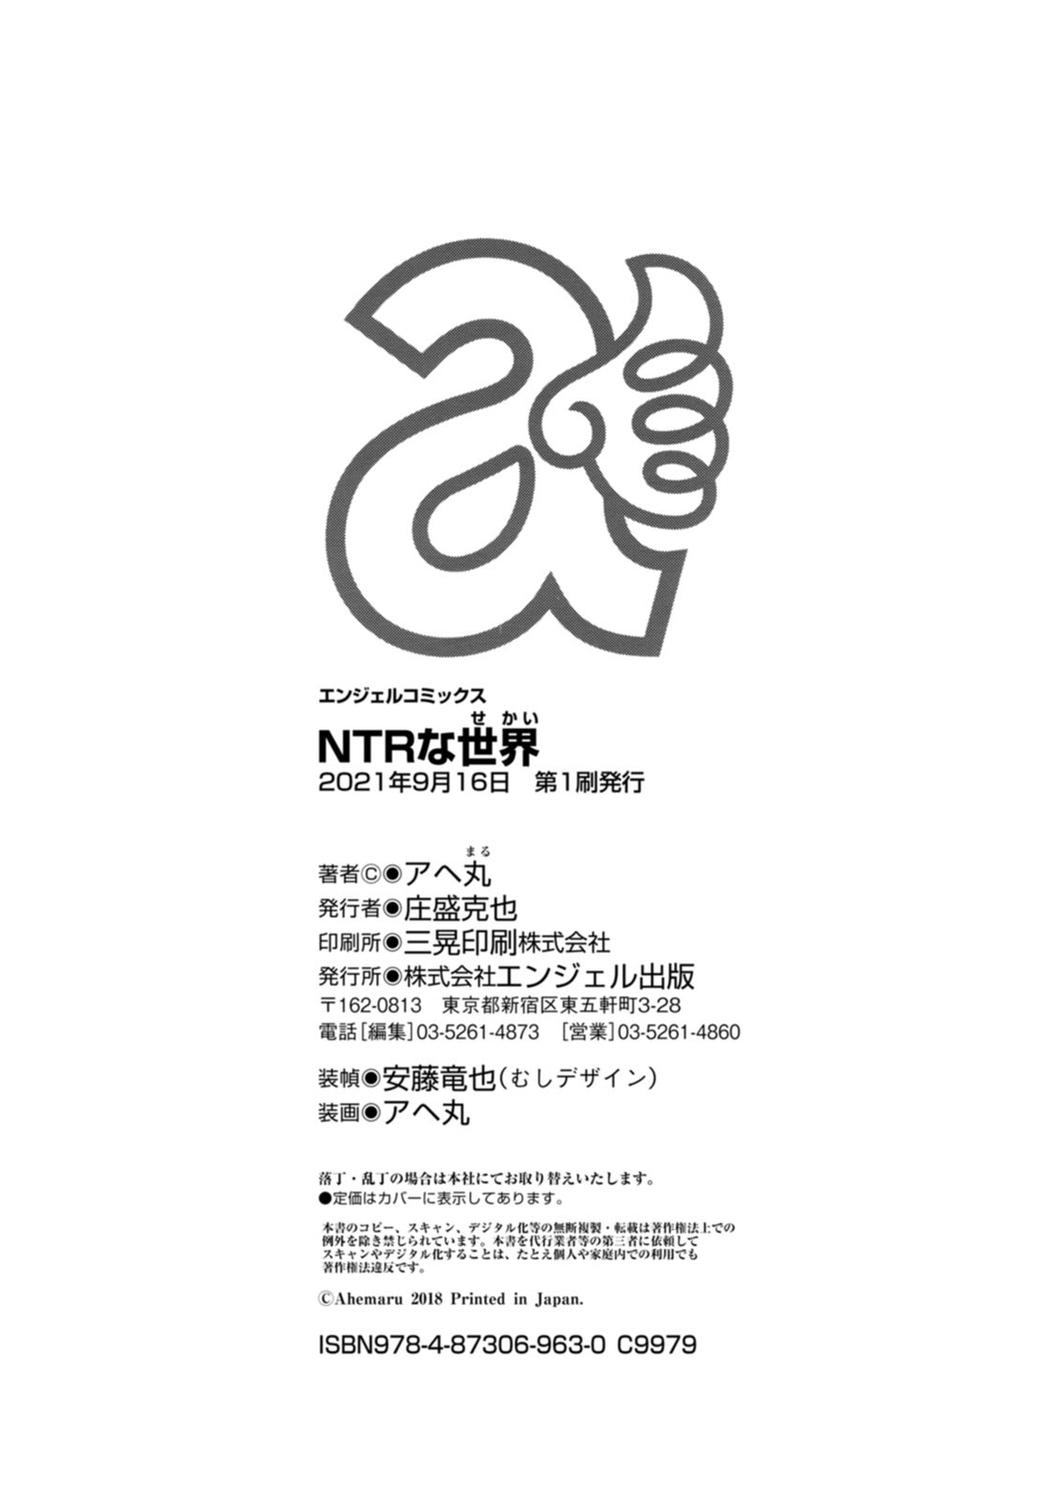 NTR na Sekai - NTR world 196